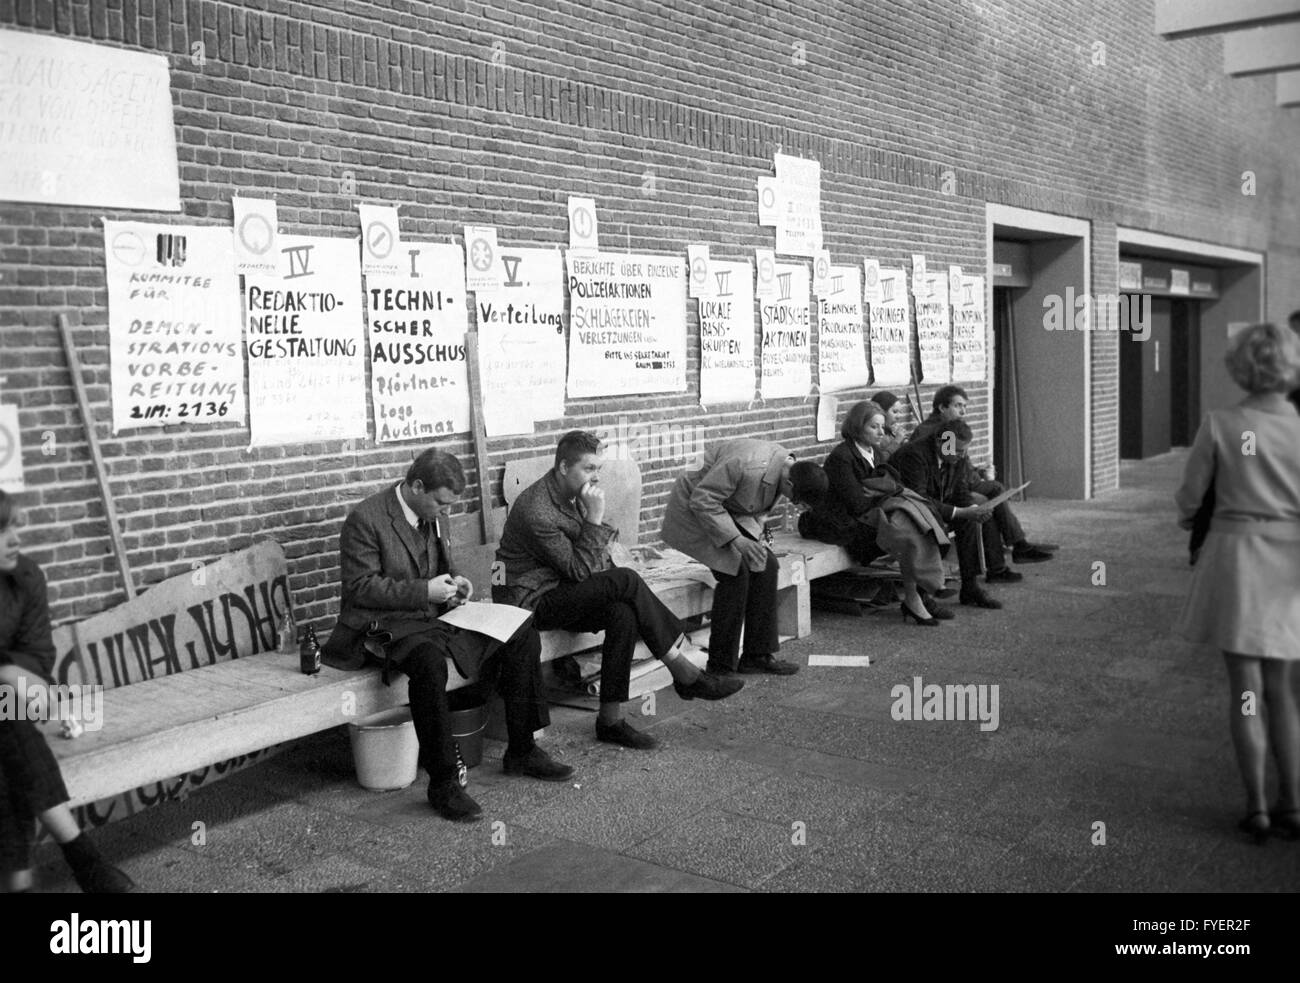 Les panneaux pour les groupes de travail à l'université le 15 avril 1968. APO, l'opposition extra-parlementaire, tient une réunion depuis la tentative d'assassinat sur Rudi Dutschke, le 11 avril 1968. Banque D'Images